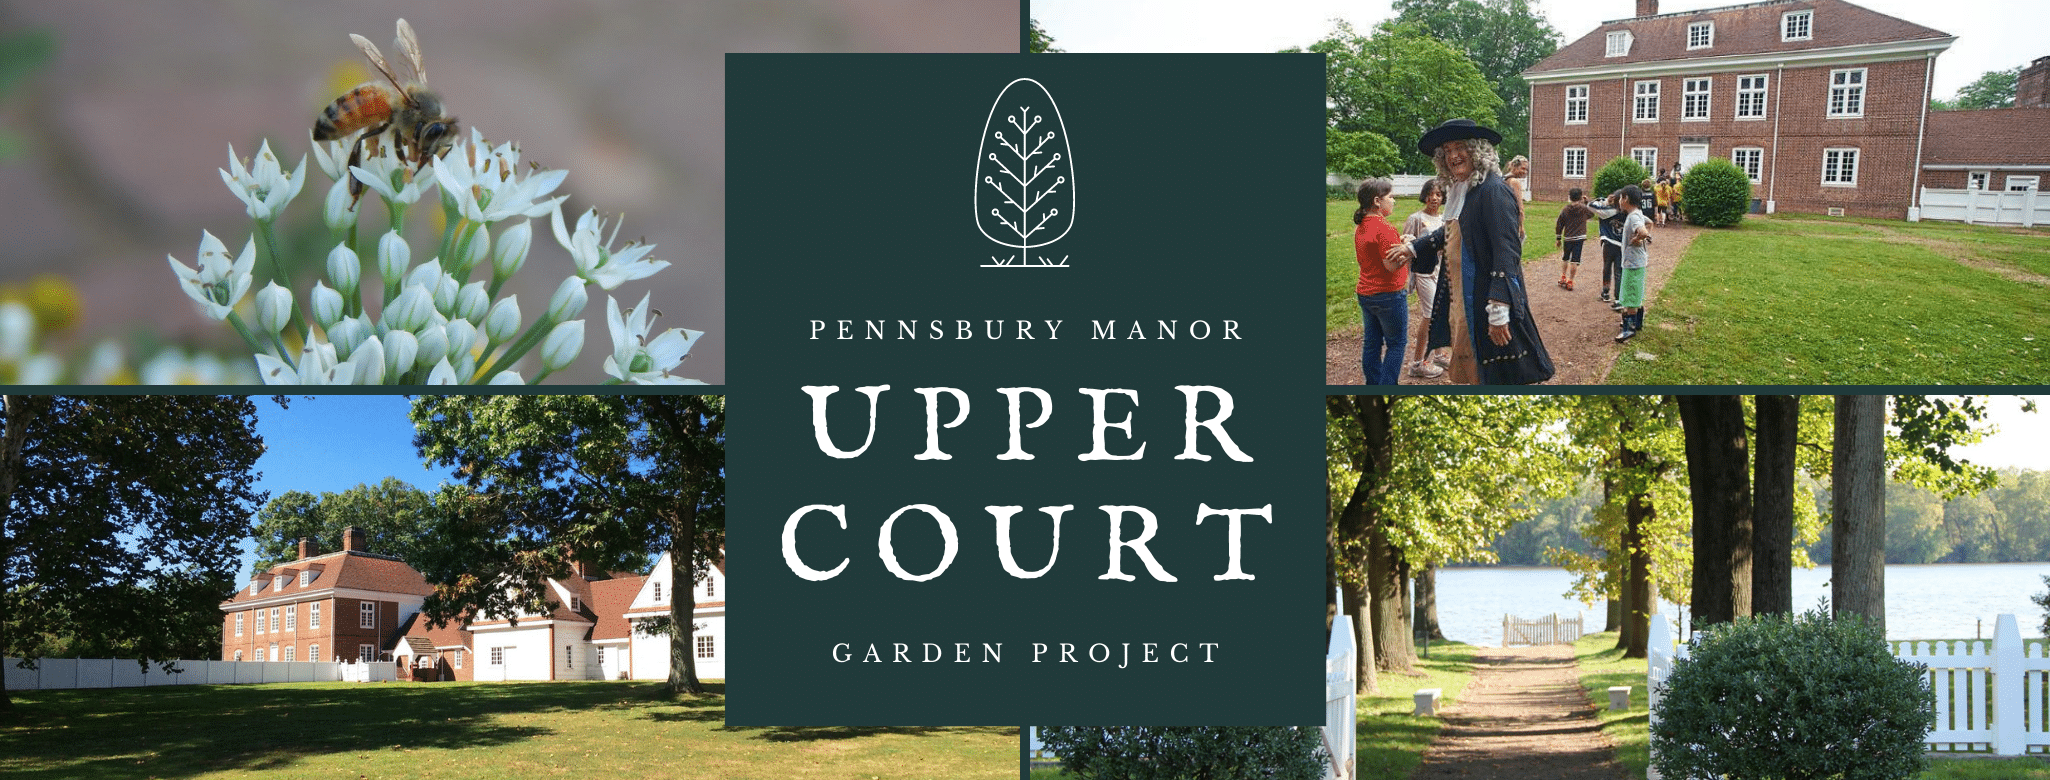 Pennsbury Manor | Upper Court Garden Project